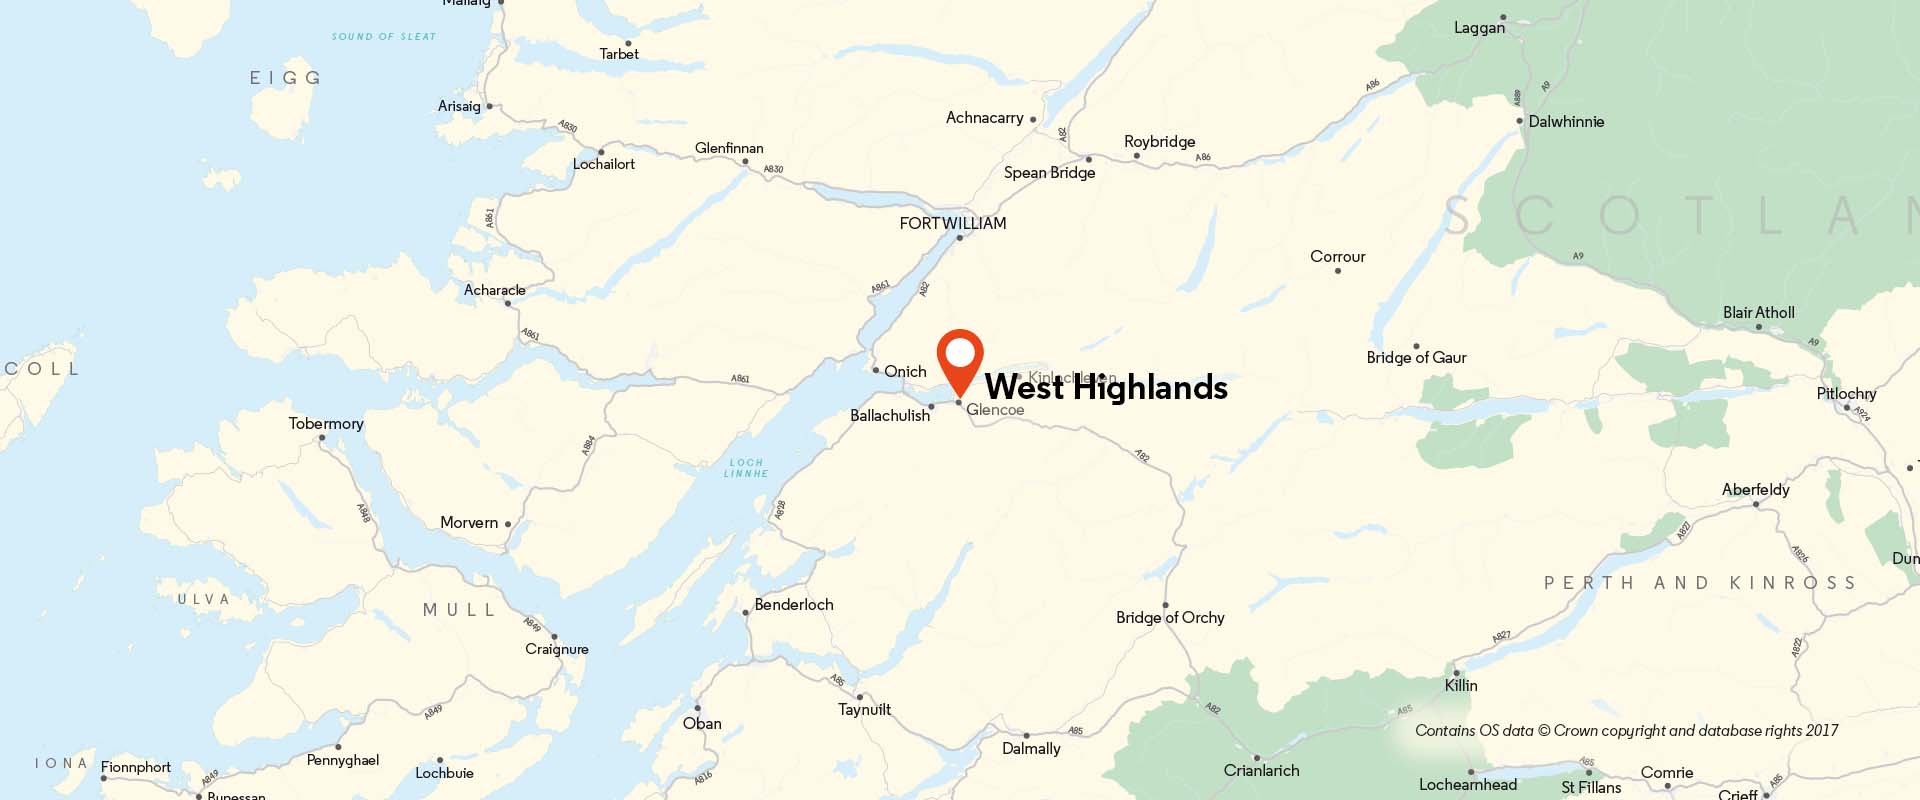 West Highlands CoM location